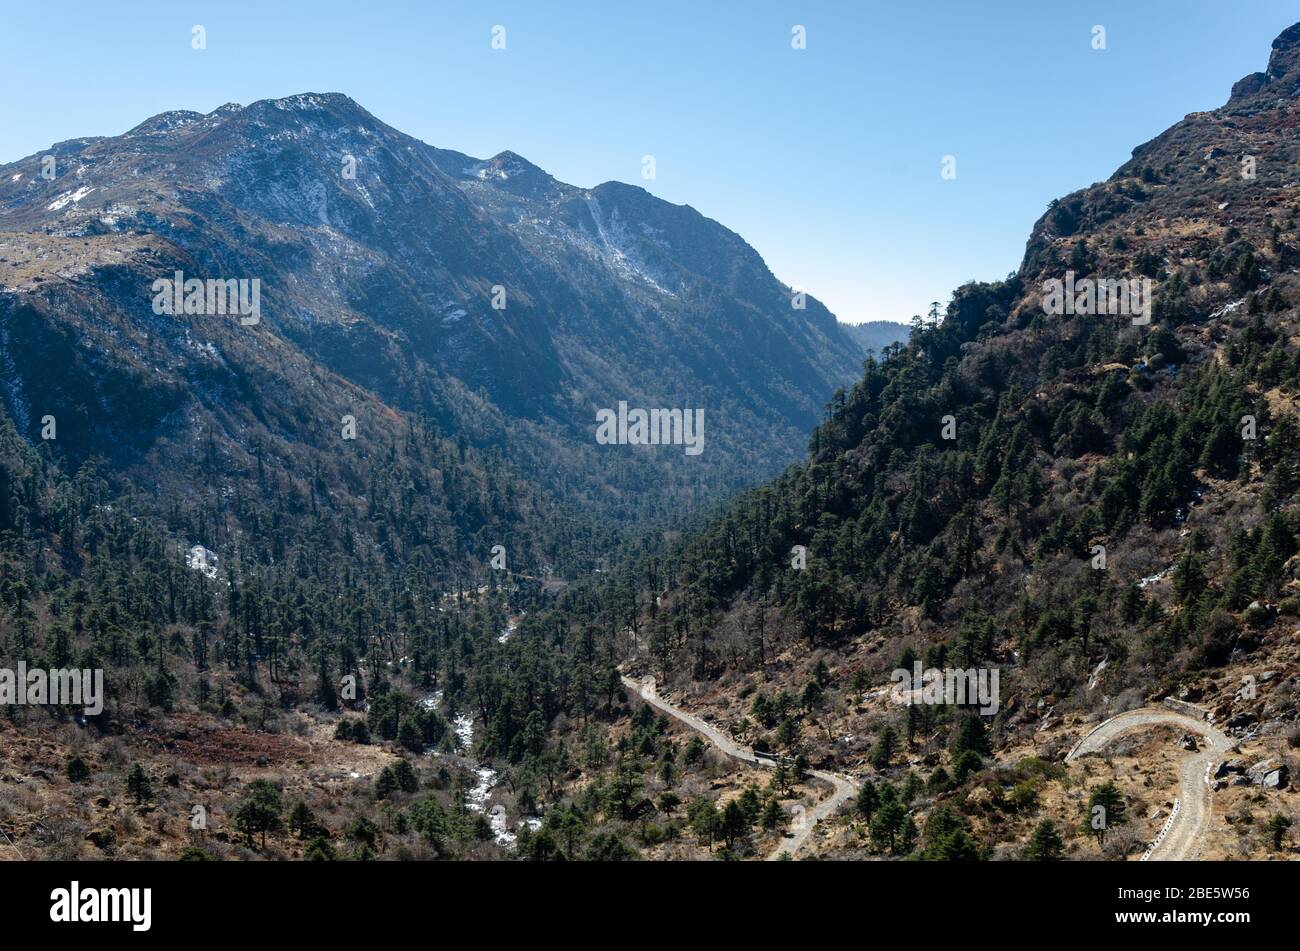 Hermosa vista del paisaje montañoso y el valle bajo mientras viaja por Nathu la Pass, Sikkim, India Foto de stock